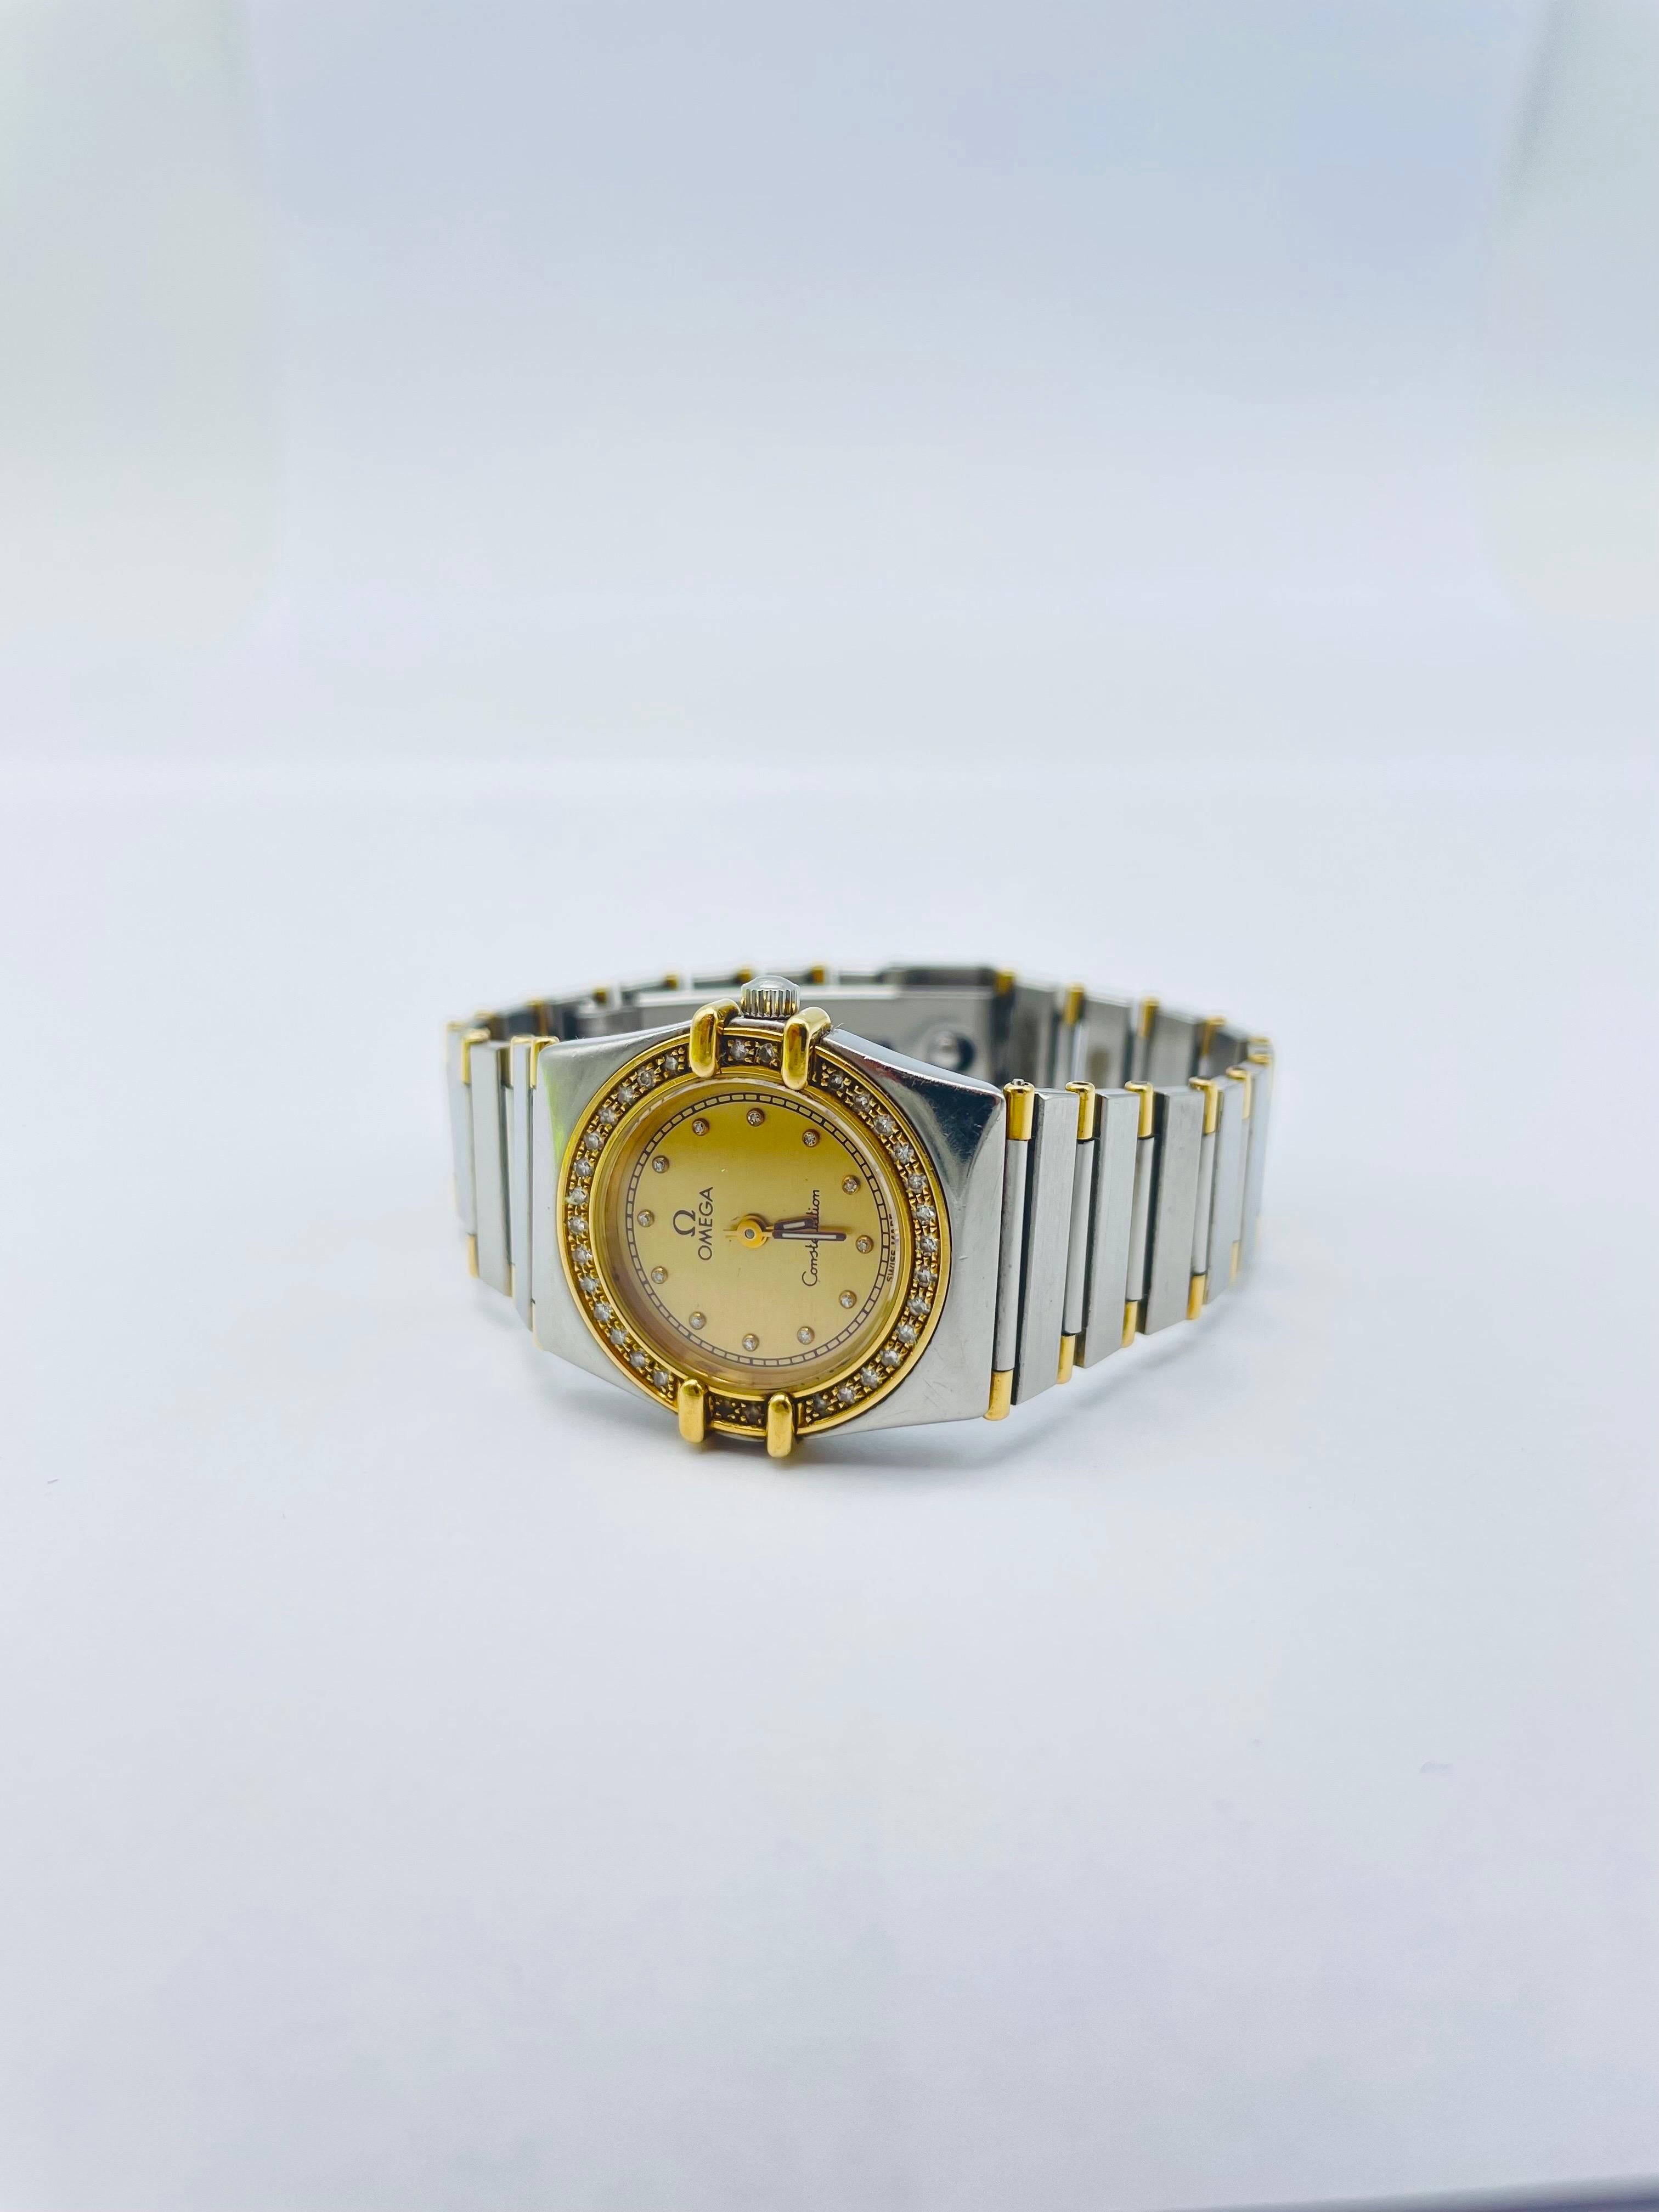 Offrez-vous le luxe avec cette montre Omega Constellation Lady pour femme, un garde-temps exquis conçu à la perfection. Cette superbe montre est dotée d'une lunette en diamants sertie dans un boîtier en acier inoxydable et en or jaune mat, créant un